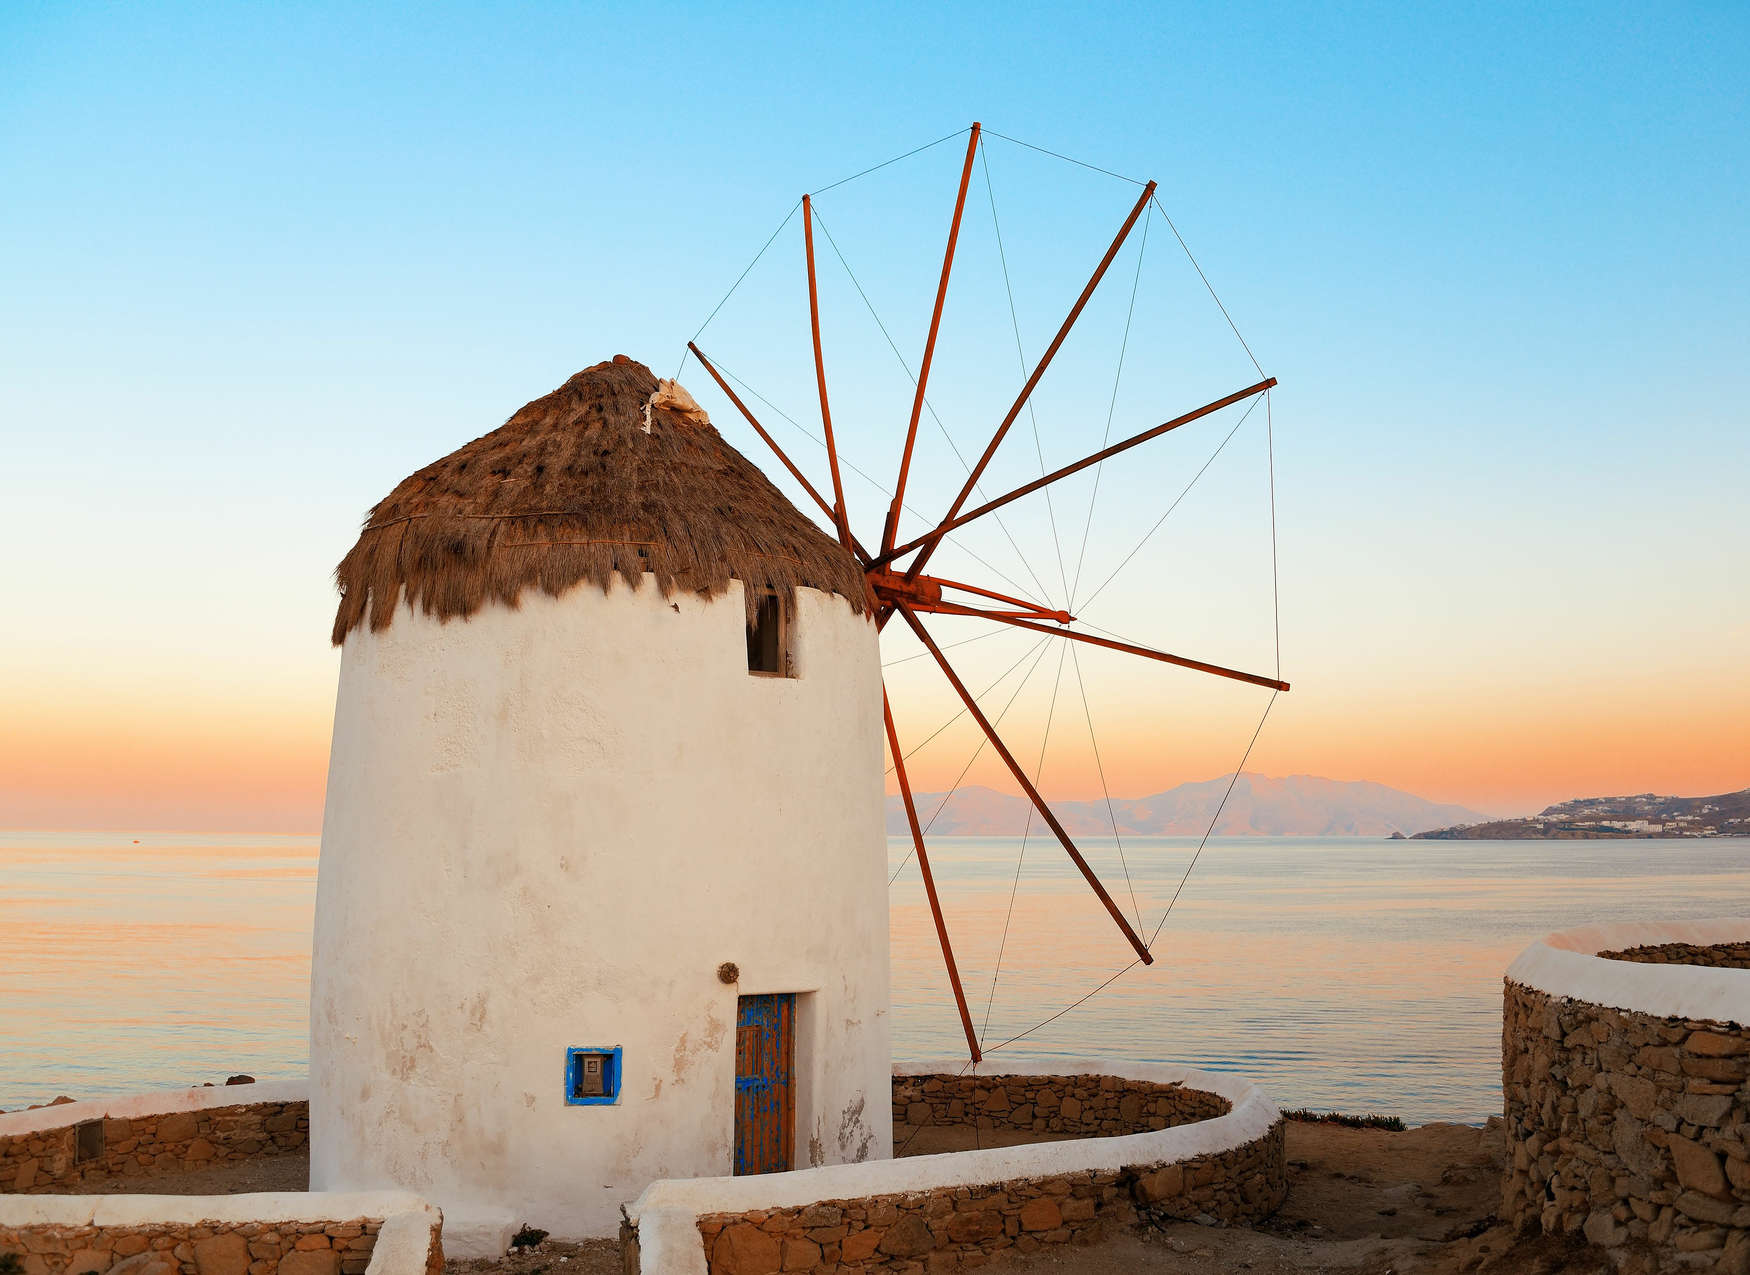             Fotomural Molino de viento griego en la costa - Azul, Naranja, Beige
        